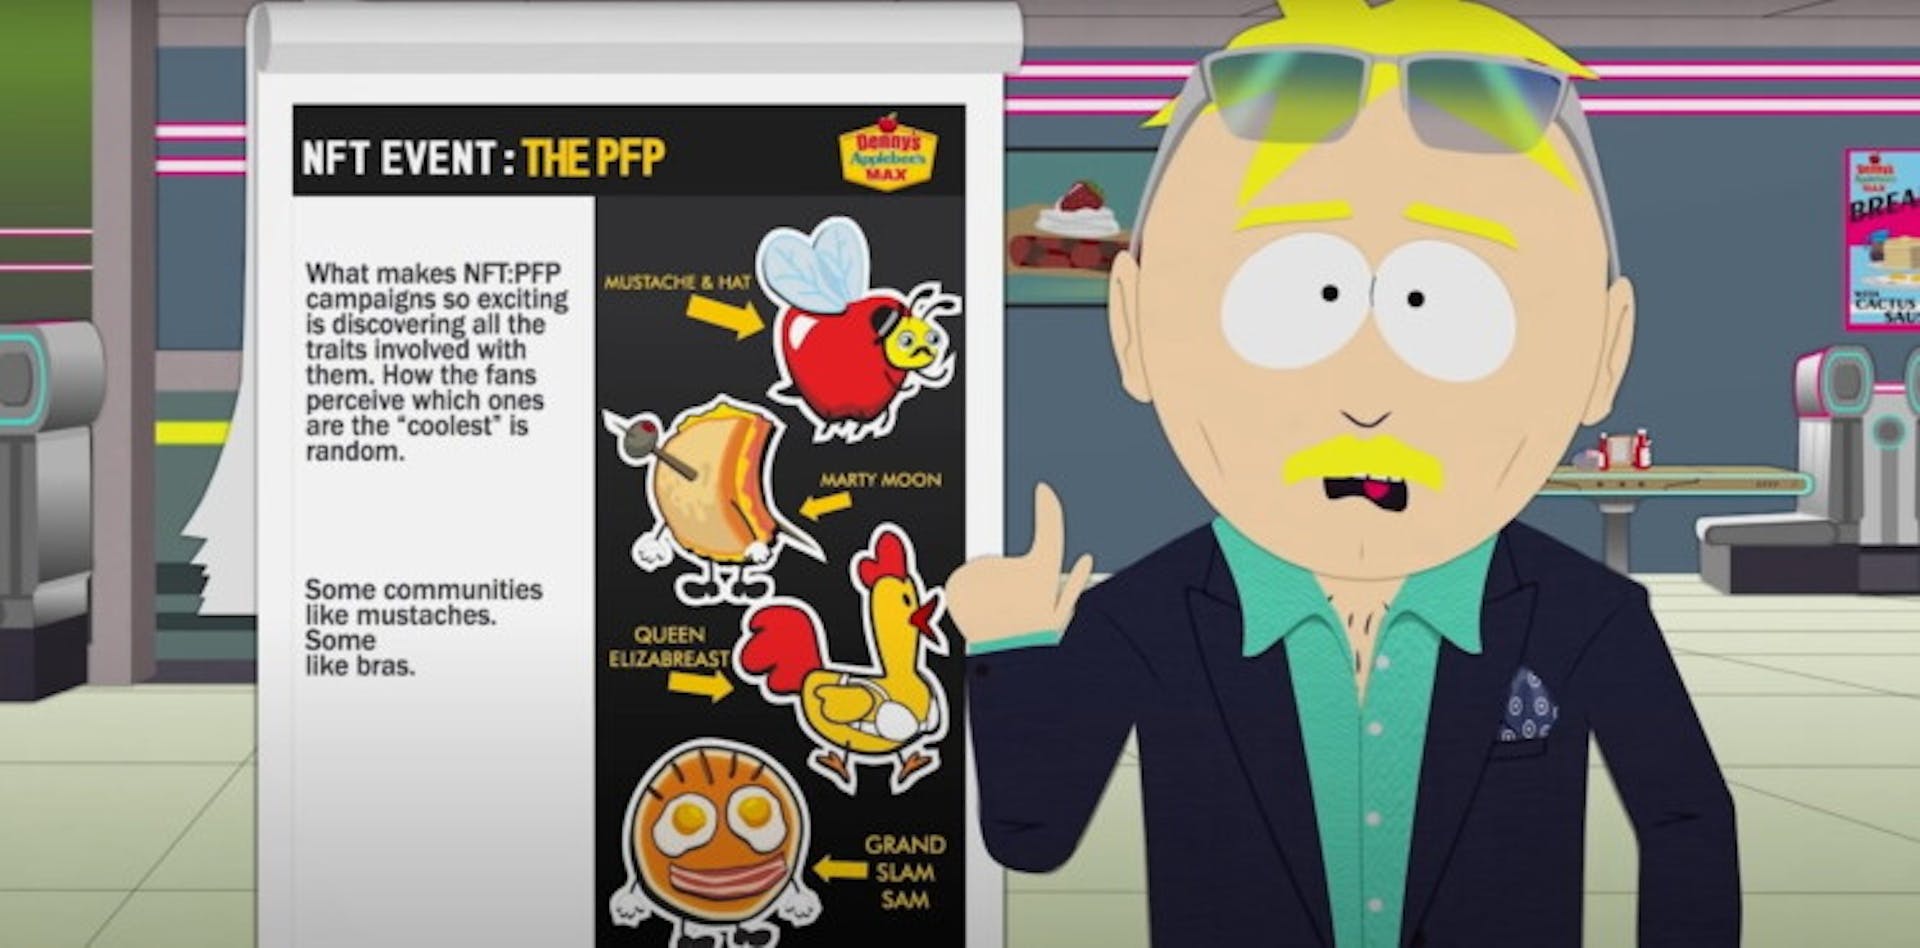 Leopold "Butters" Stotch, bir fast food zincirini NFT'yi piyasaya sürmeye ikna ediyor. "South Park"ın özel bölümünden bir kare